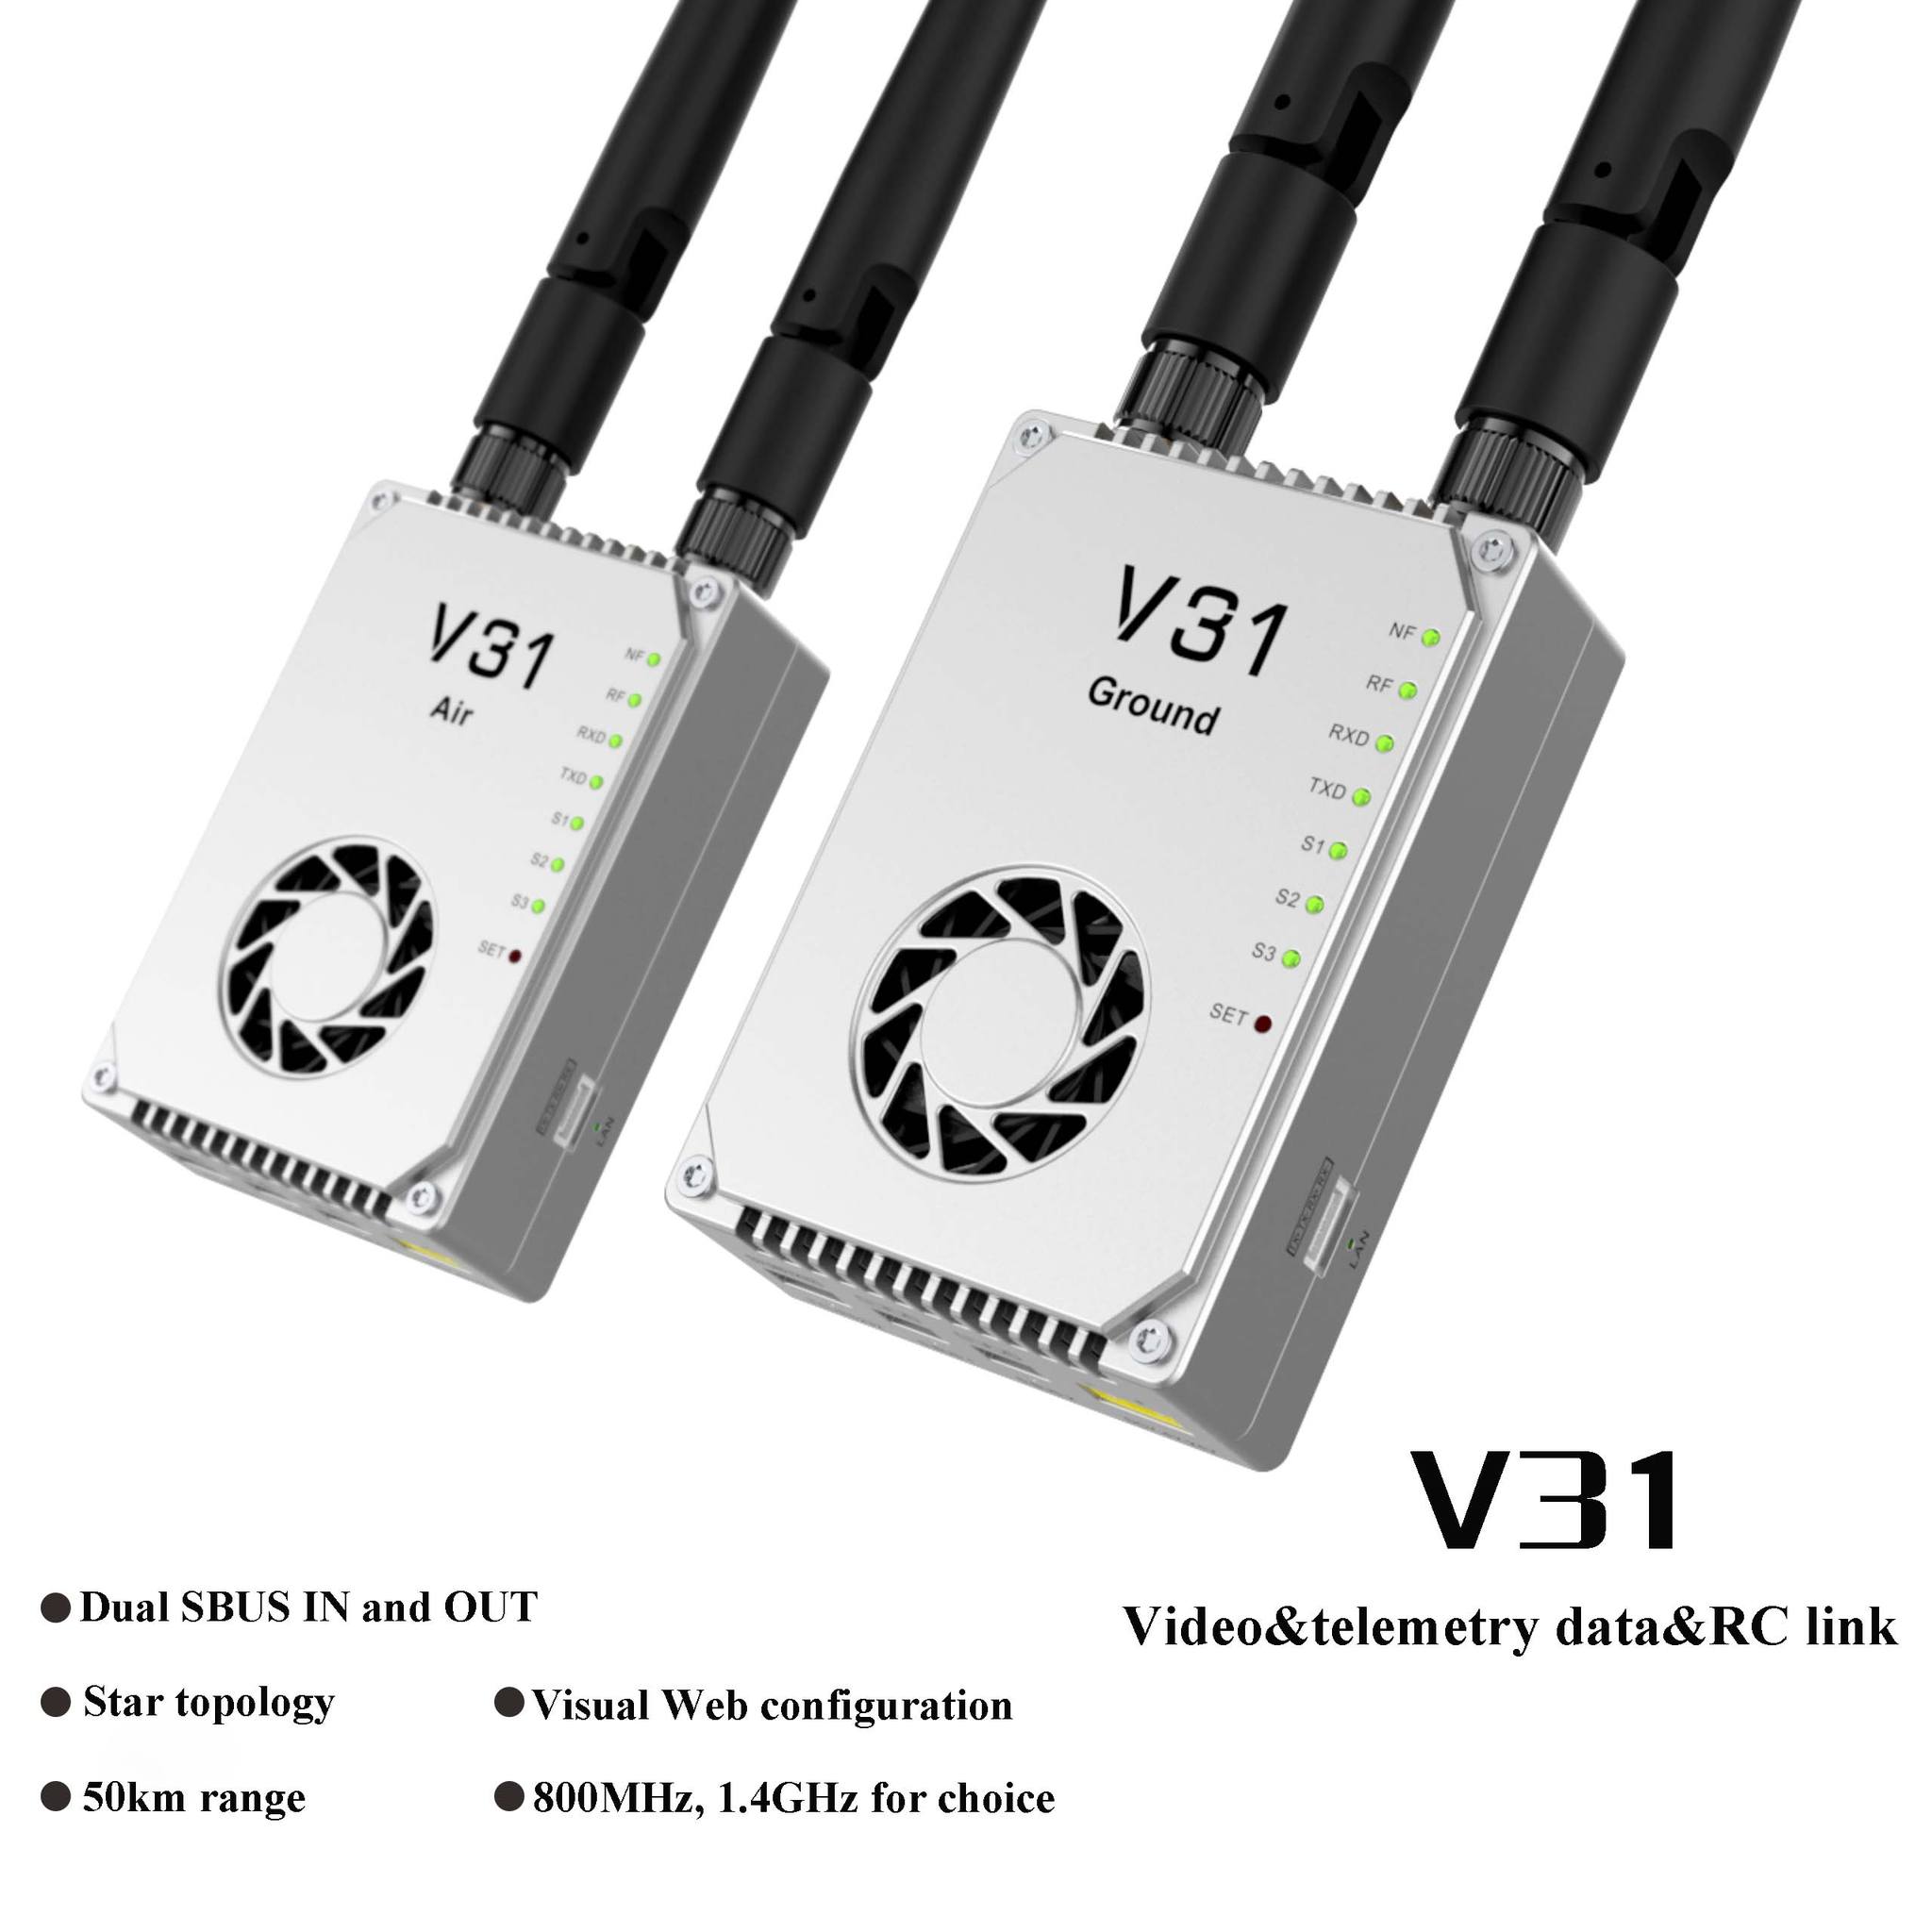 Découvrez le V31 Wireless Data & RC Link de SMARTNOBLE pour une connectivité fiable